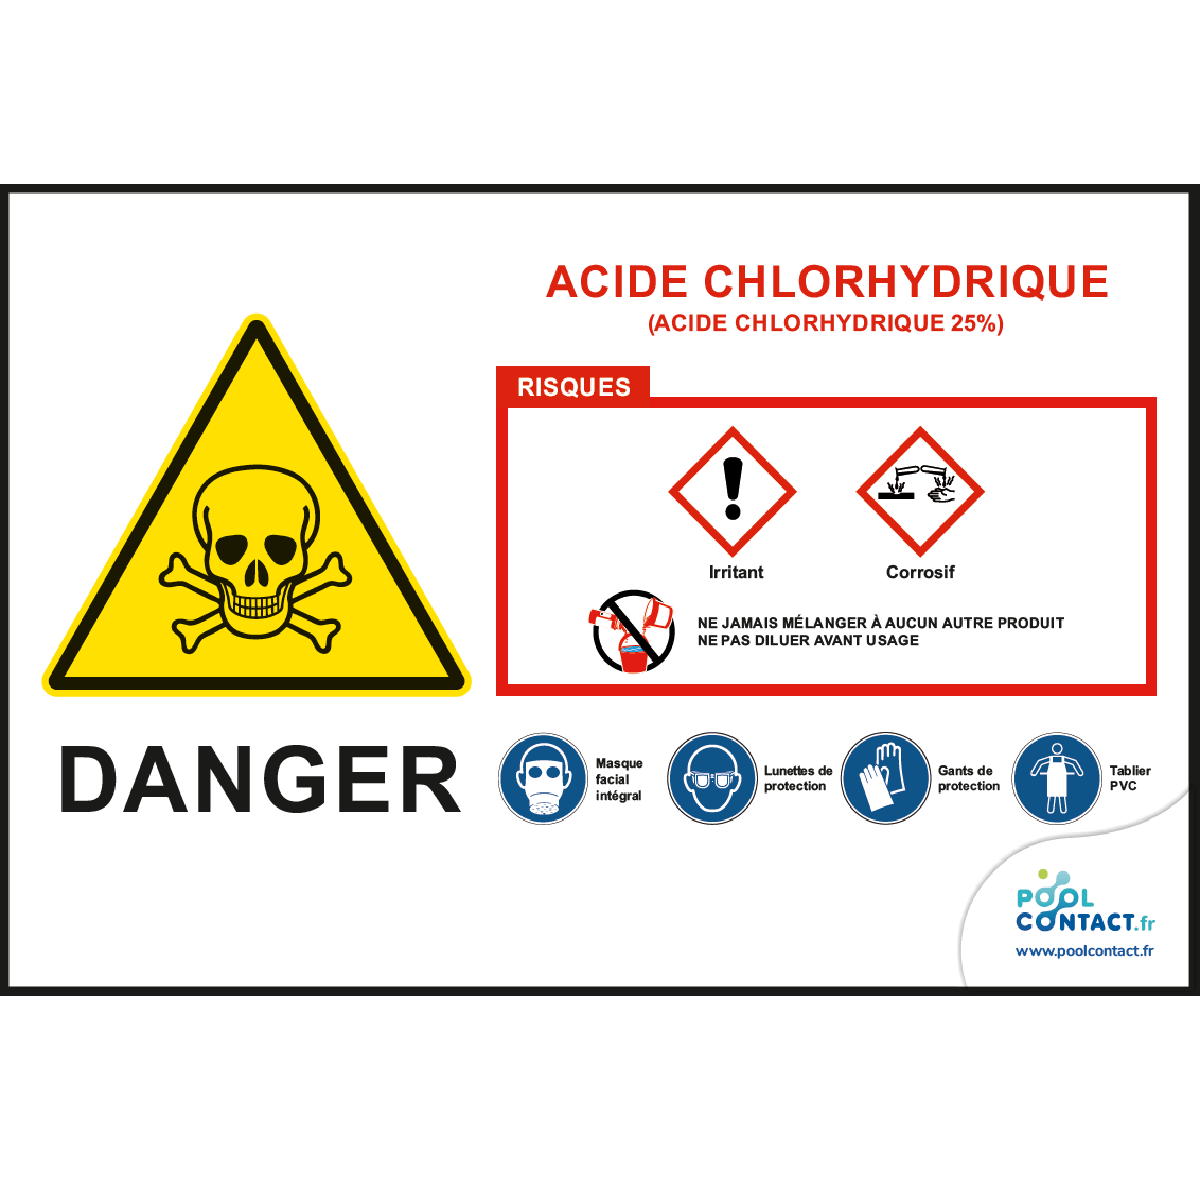 Acide chlorhydrique